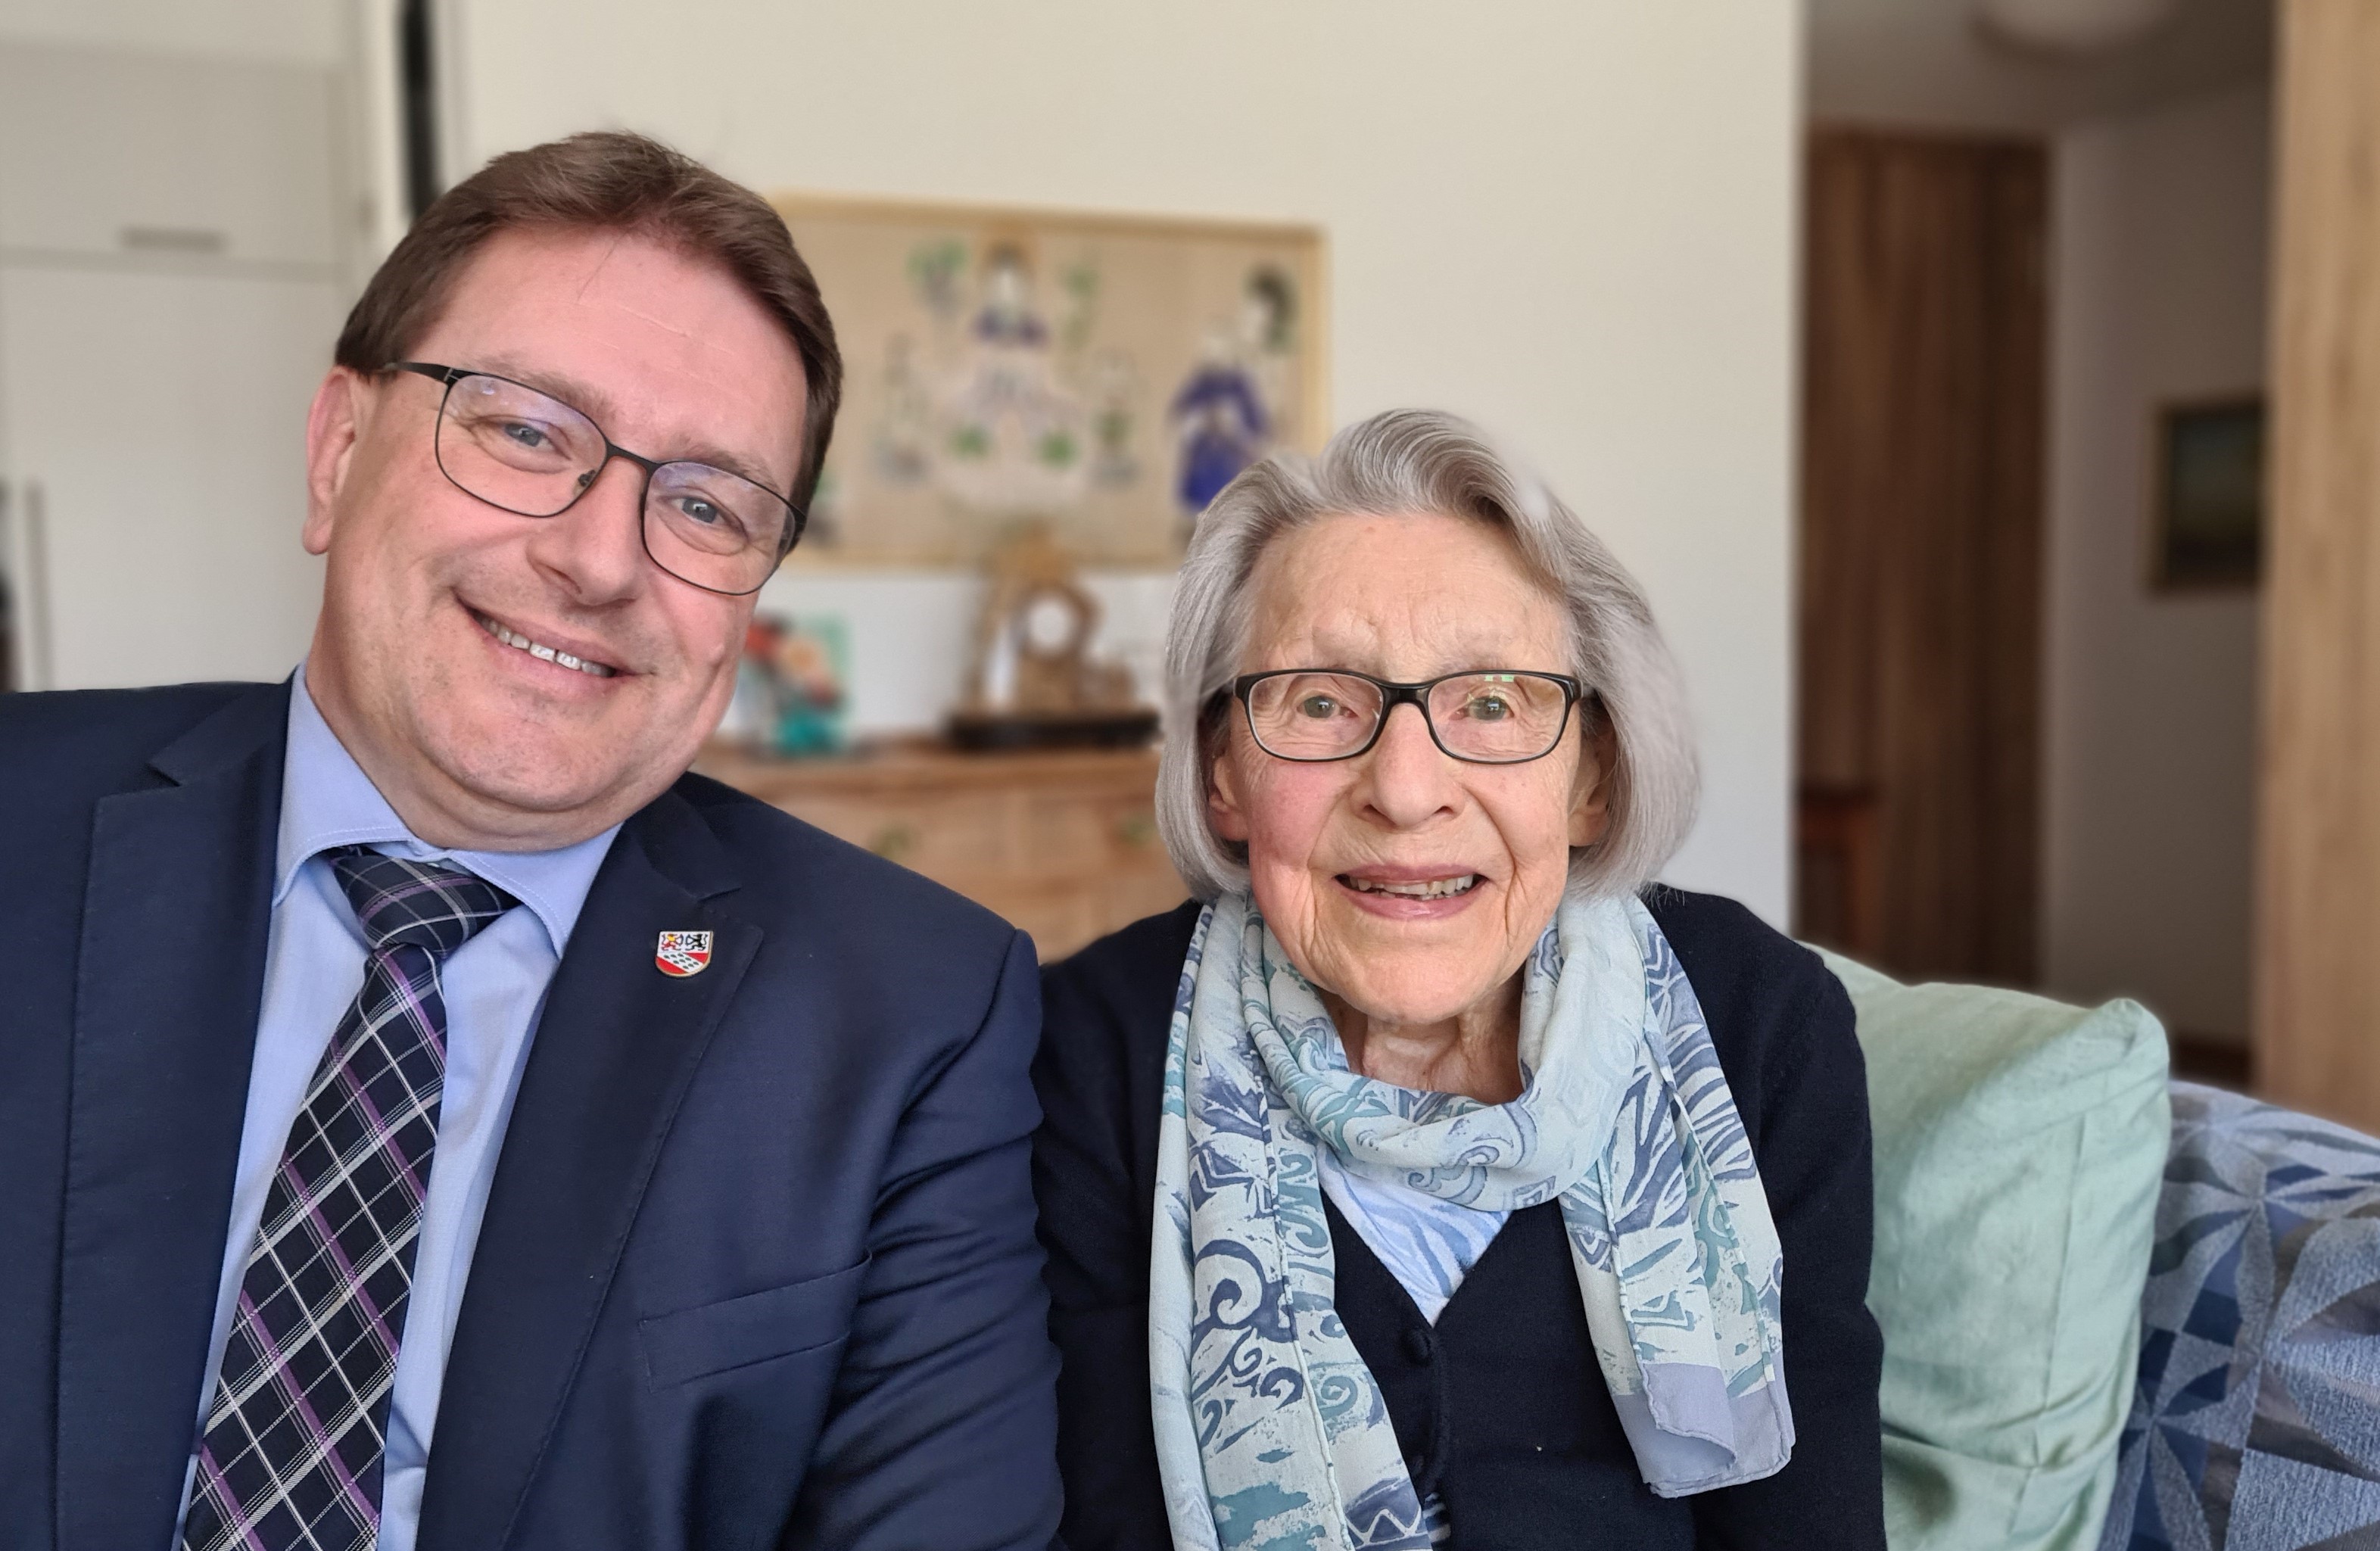 Am 17. März 2023 durfte Frau Elisabetha Graf ihren 95. Geburtstag feiern.
Die Gemeindebehörden gratulieren herzlichst dazu!